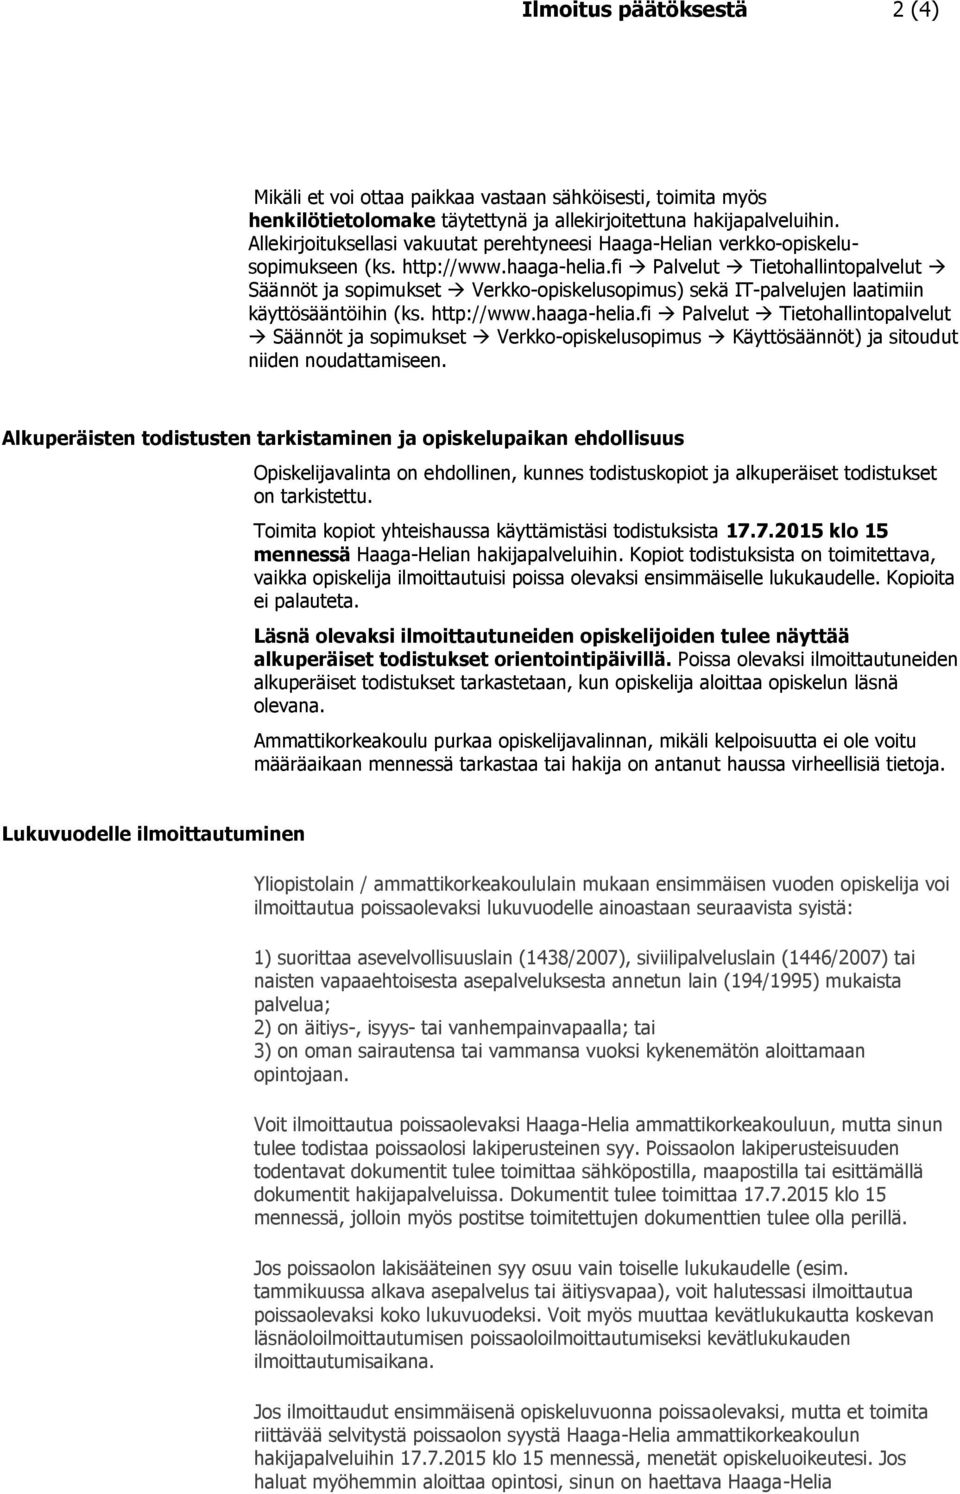 fi Palvelut Tietohallintopalvelut Säännöt ja sopimukset Verkko-opiskelusopimus) sekä IT-palvelujen laatimiin käyttösääntöihin (ks. http://www.haaga-helia.